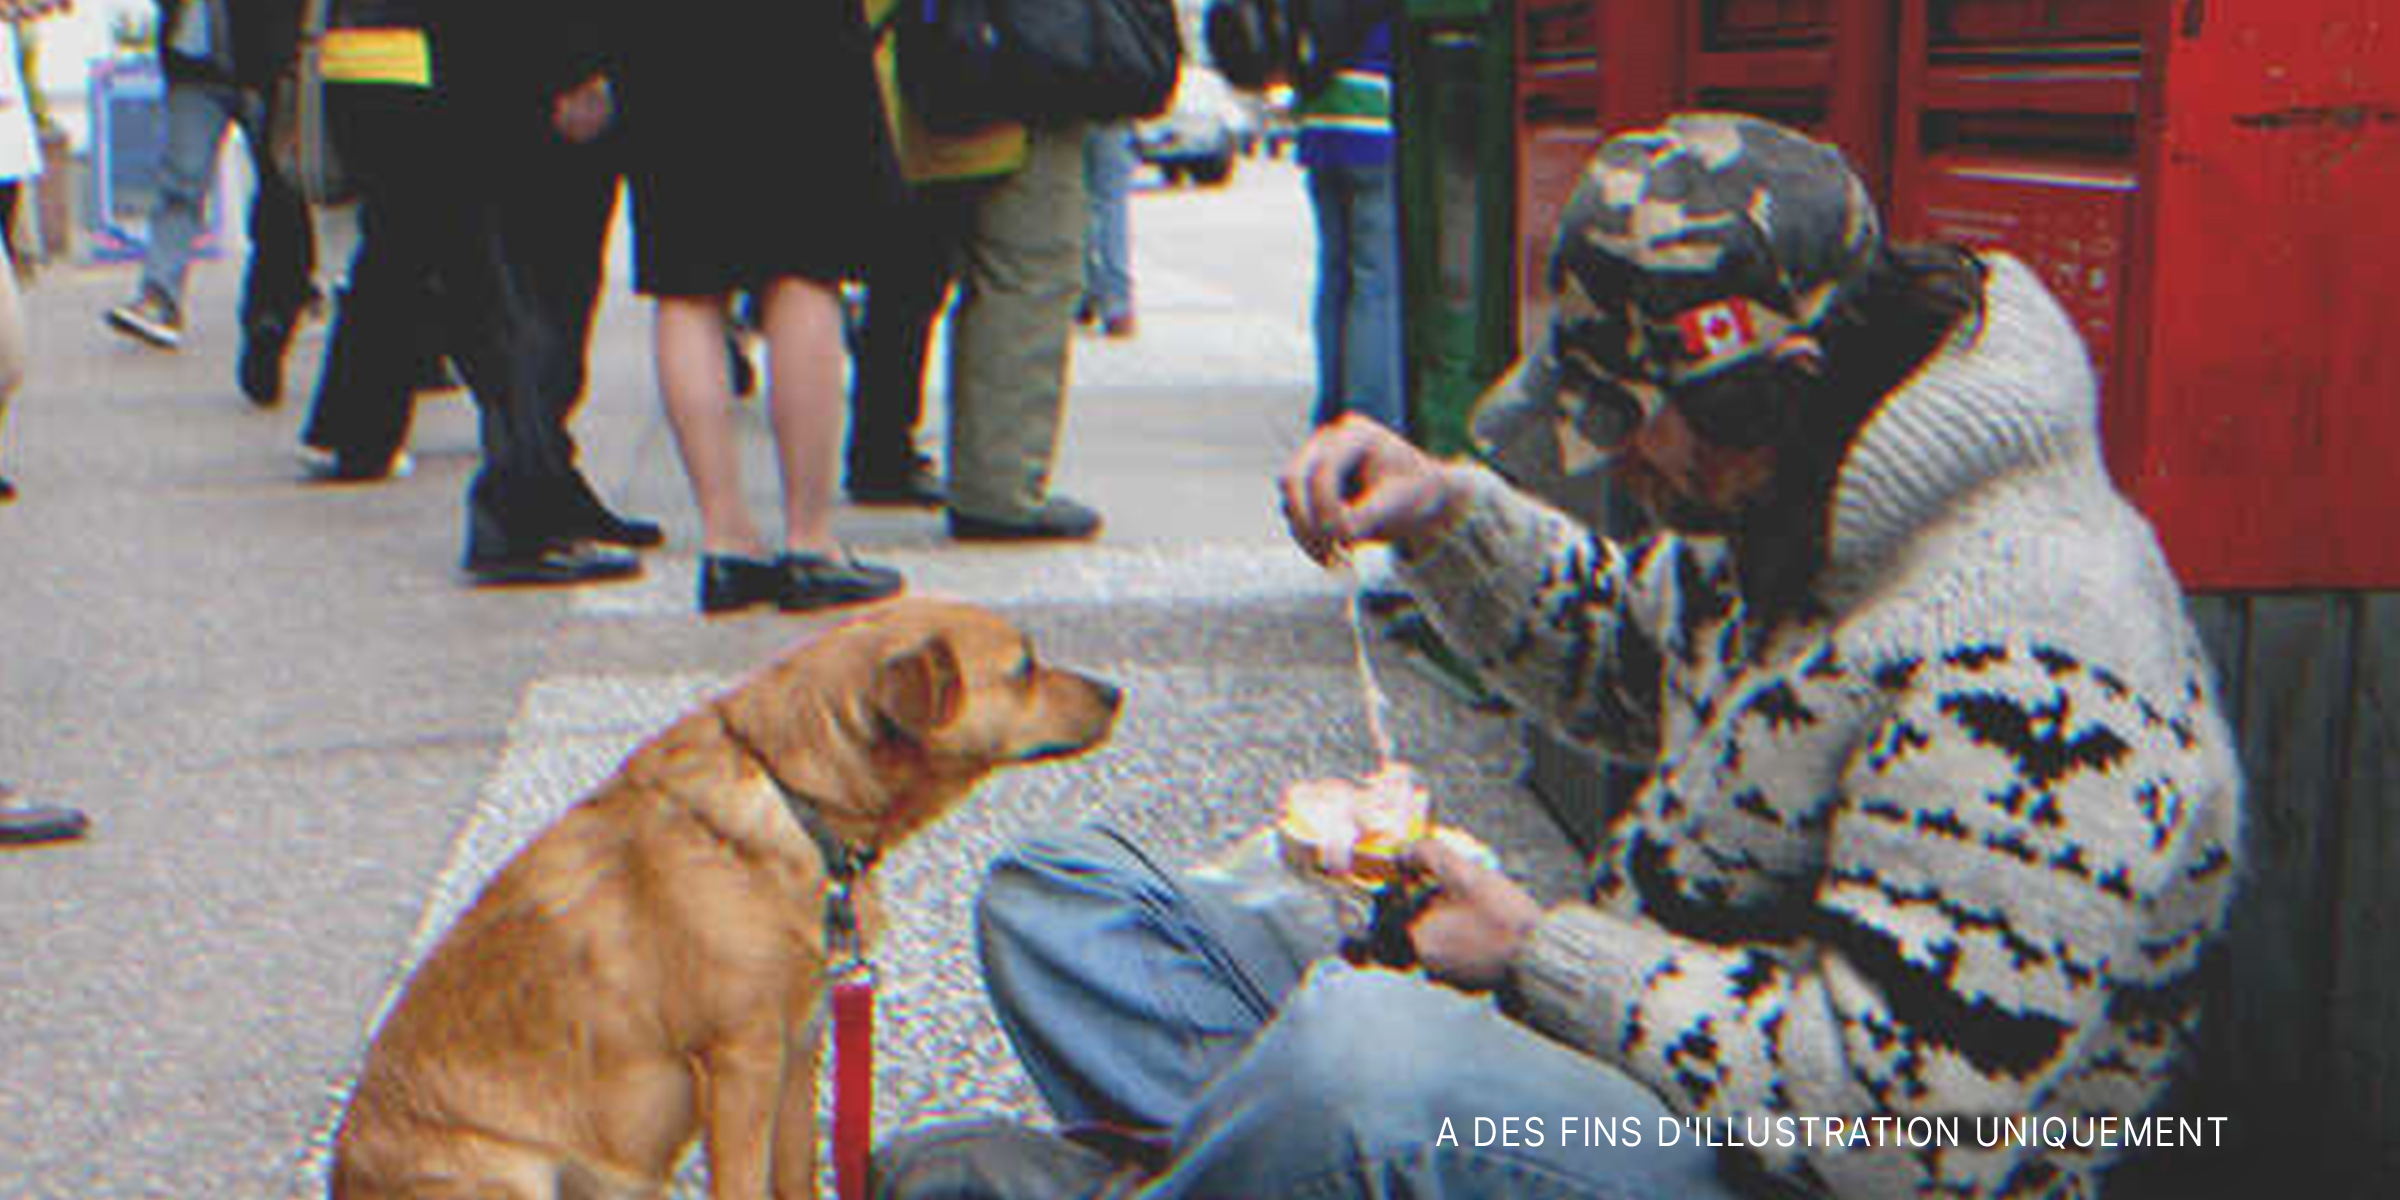 Un homme sans abri nourrissant un chien dans la rue | Source : Shutterstock